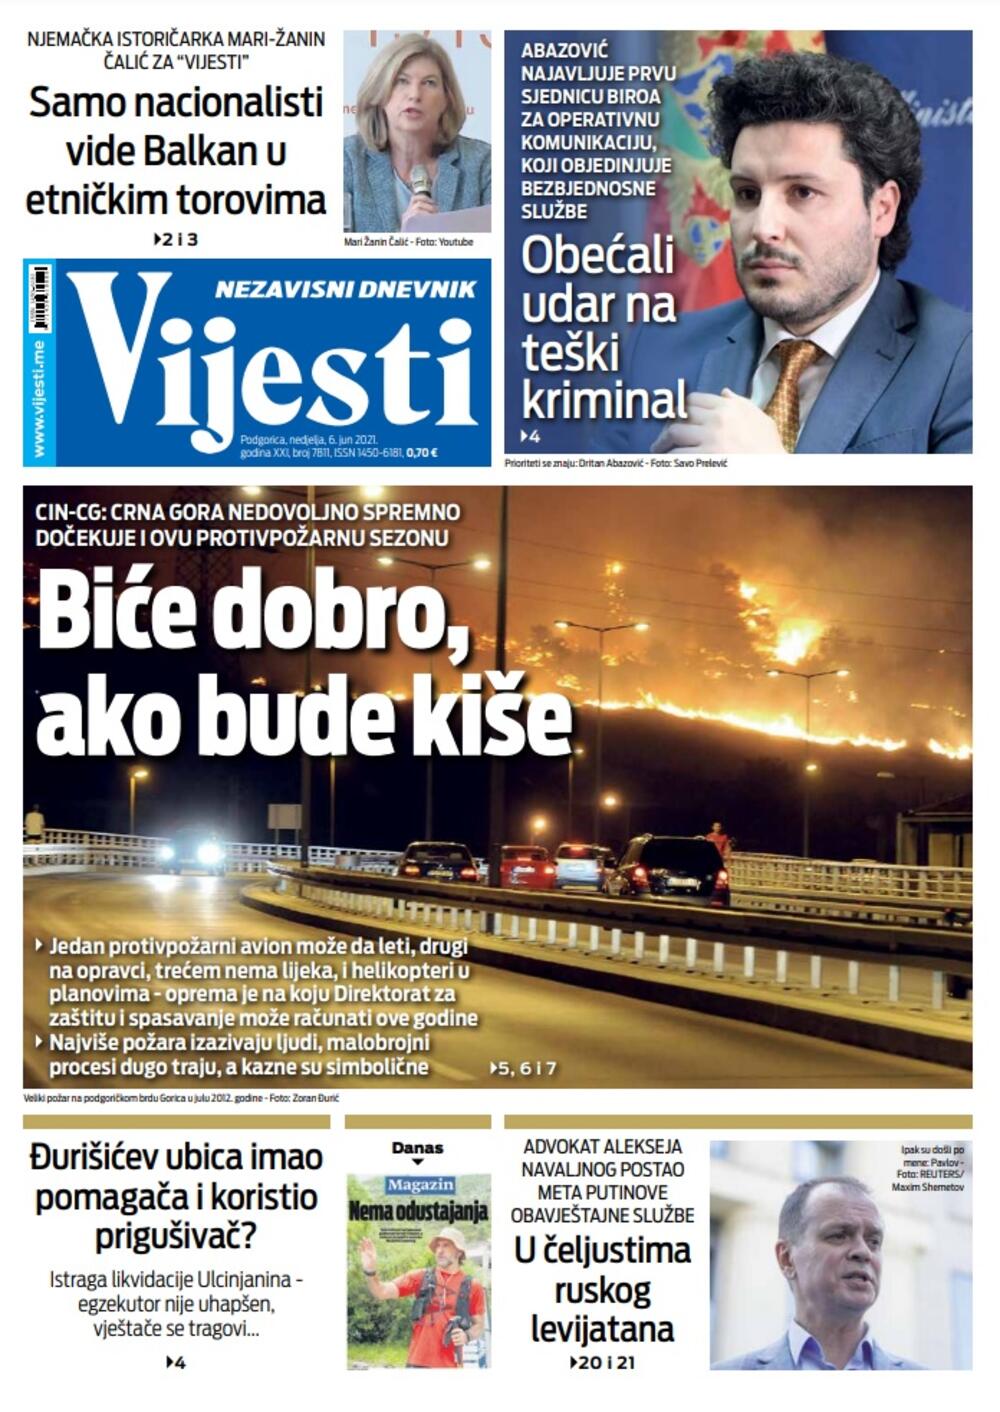 Naslovna strana Vijesti za nedjelju 6. jun 2021. godine, Foto: Vijesti